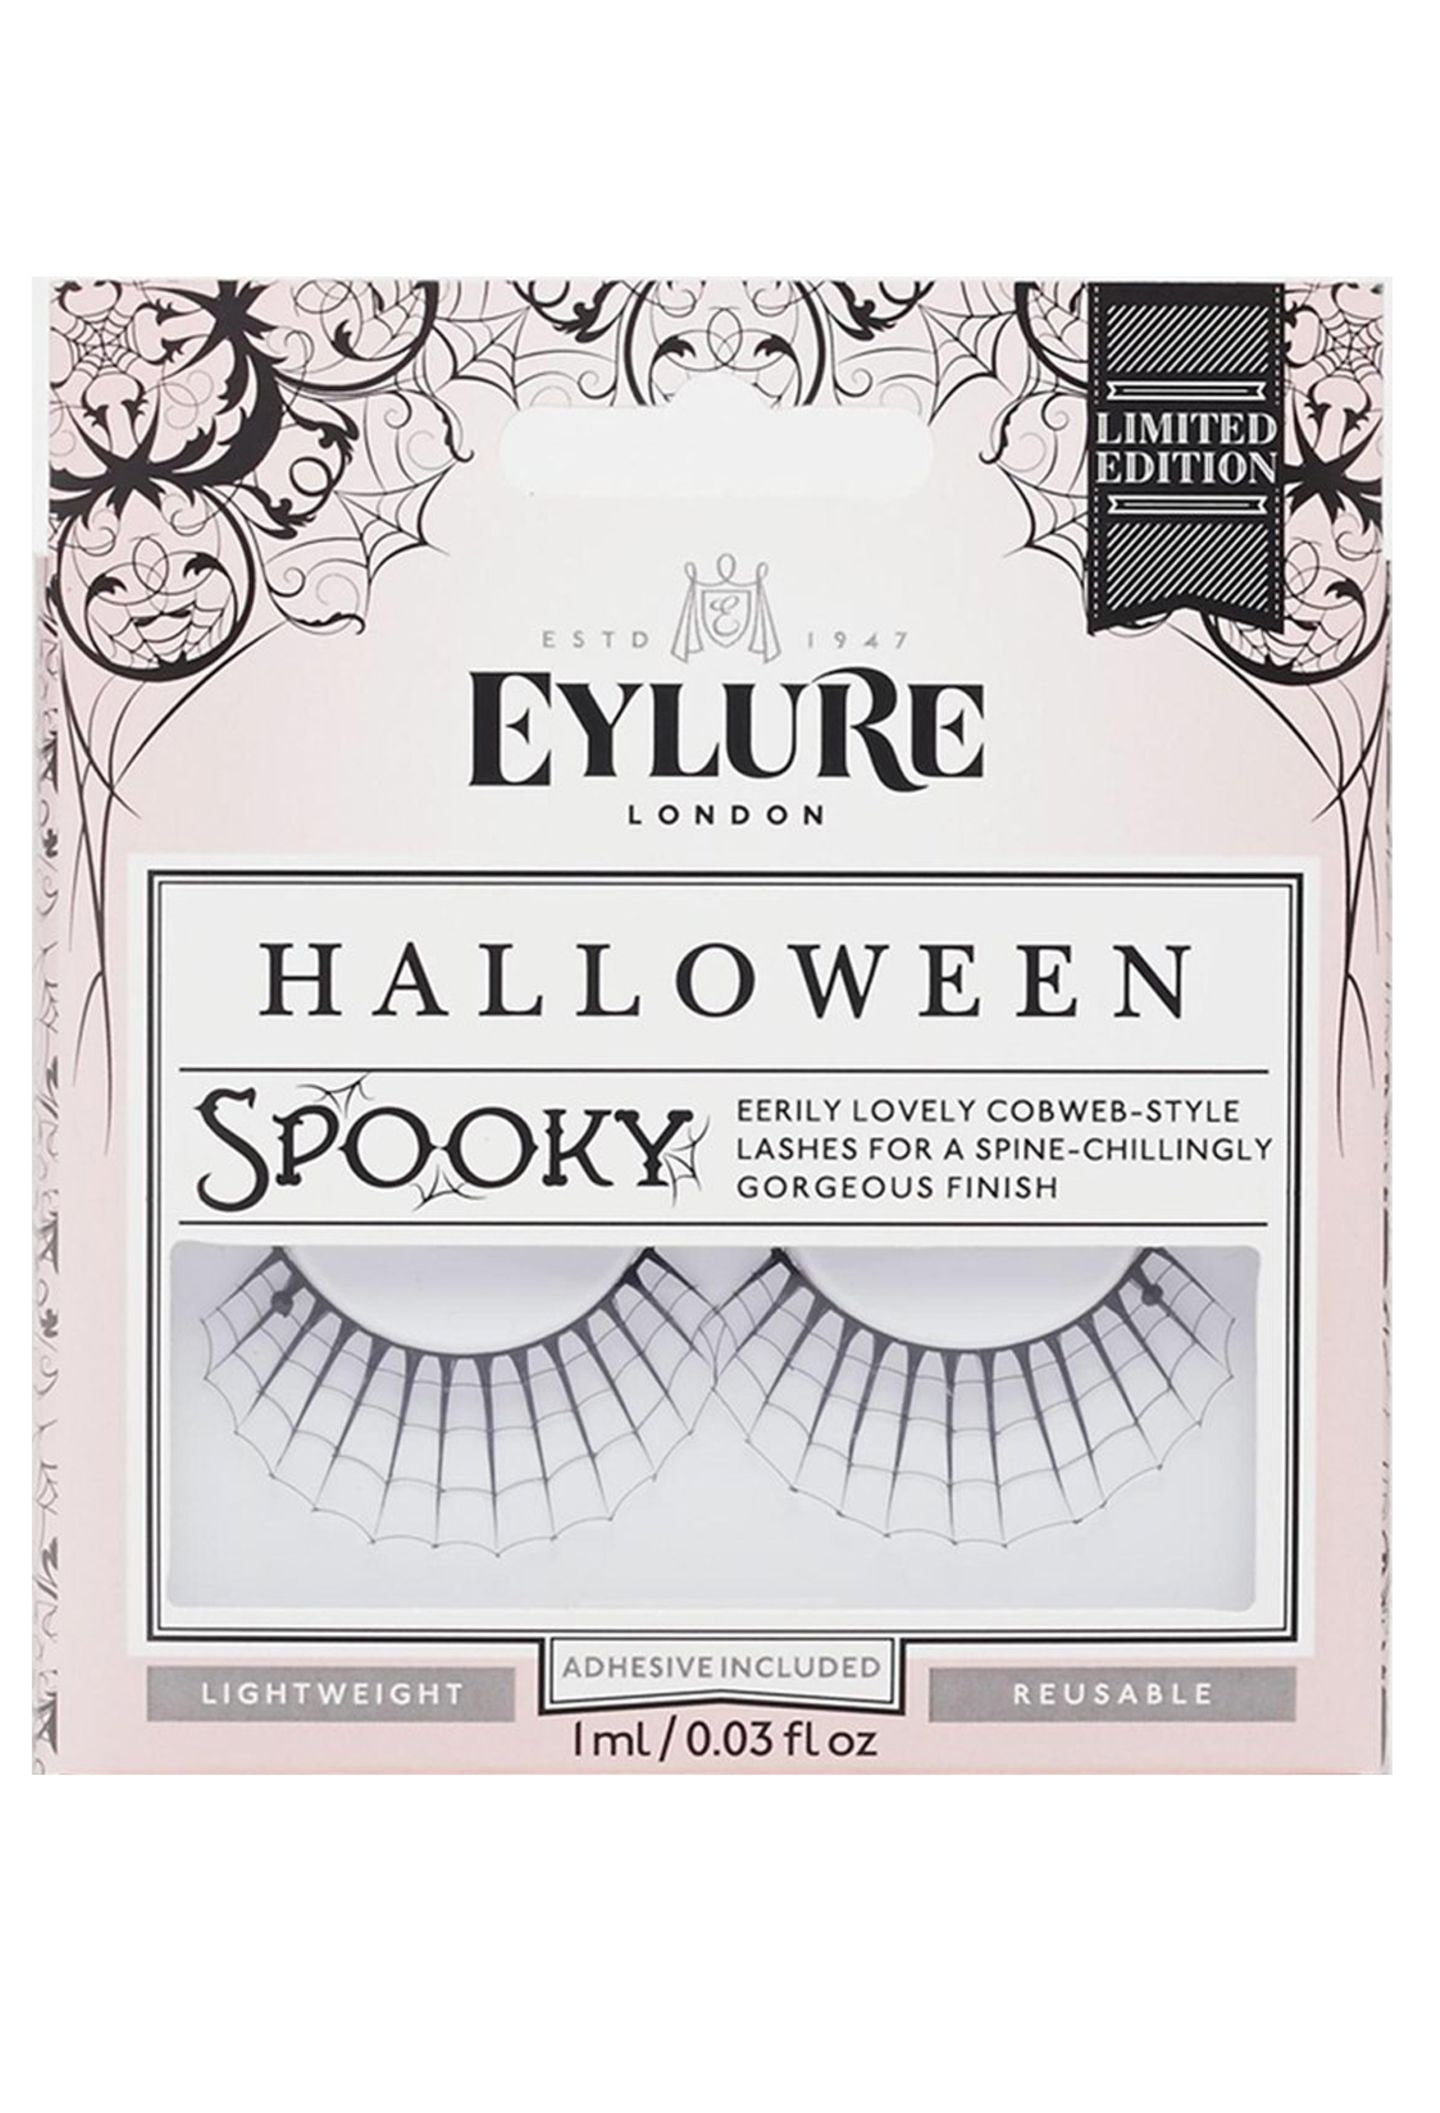 Daran bleiben alle Blicke haften: "Spooky"-Fakelashes in Spinnennetz-Optik. Von Eylure, ca. 11 Euro, limitiert